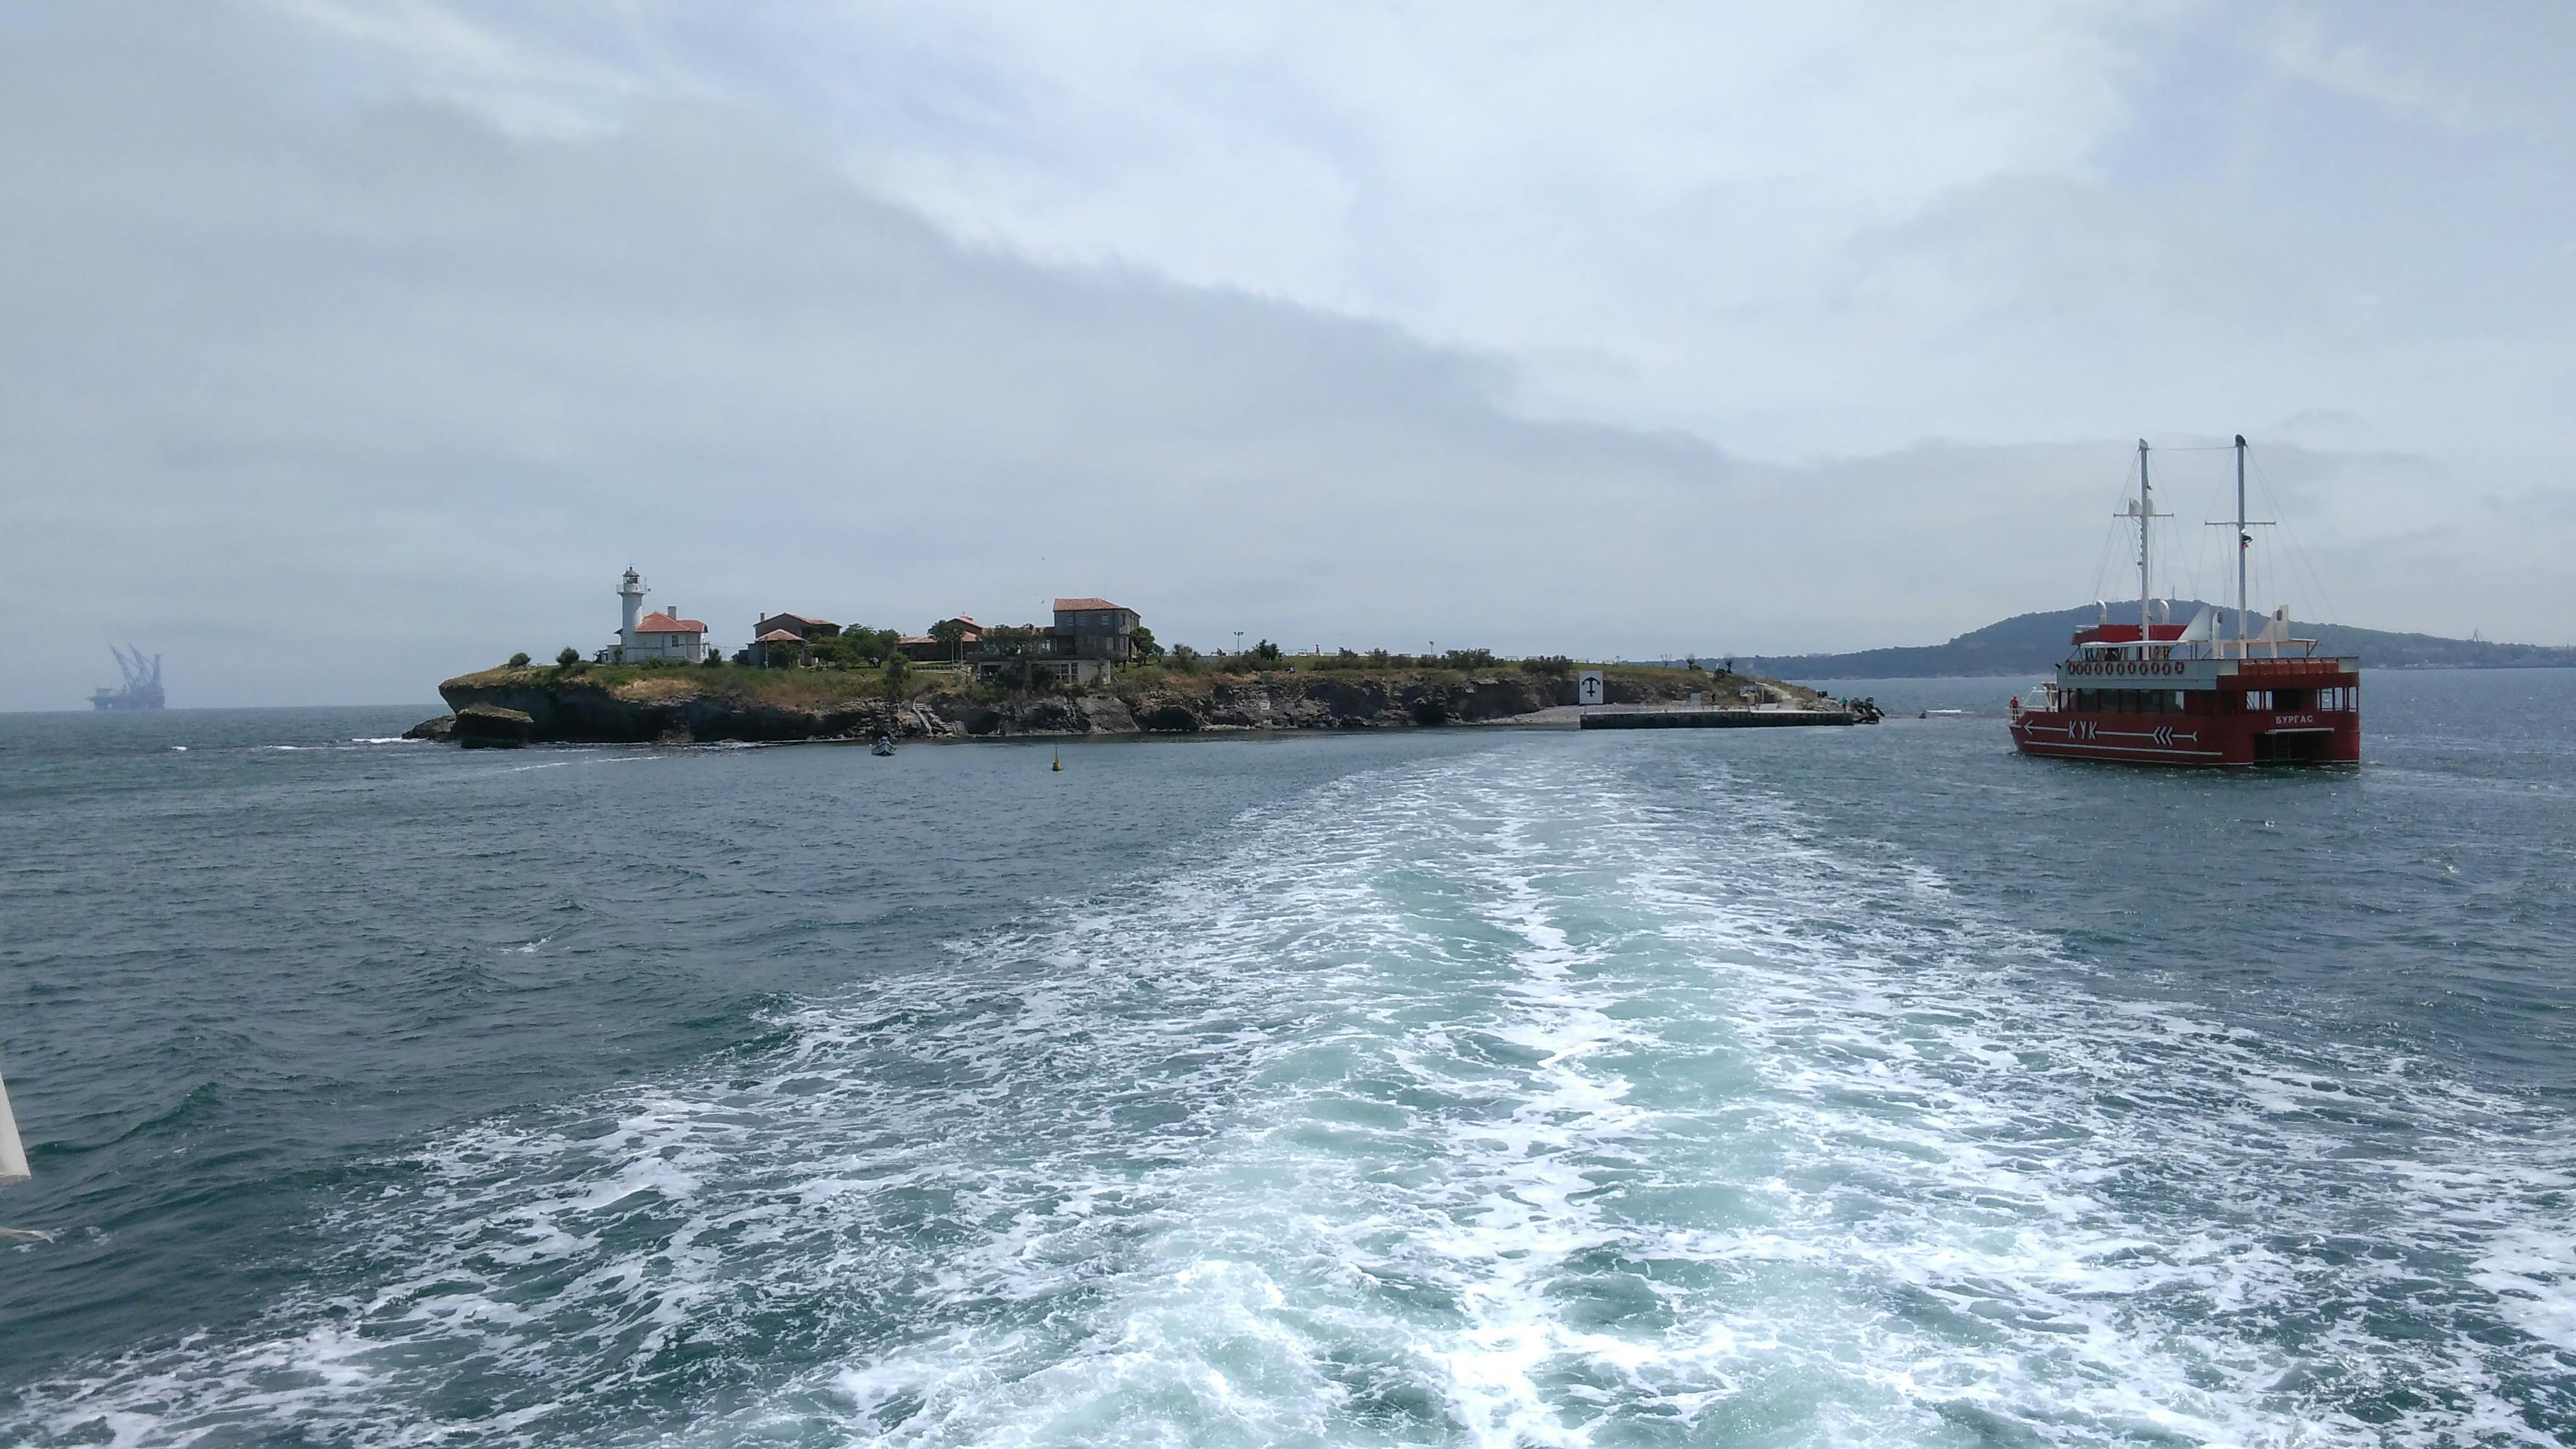 Visite unique de l'île Sainte-Anastasie dans la mer Noire bulgare